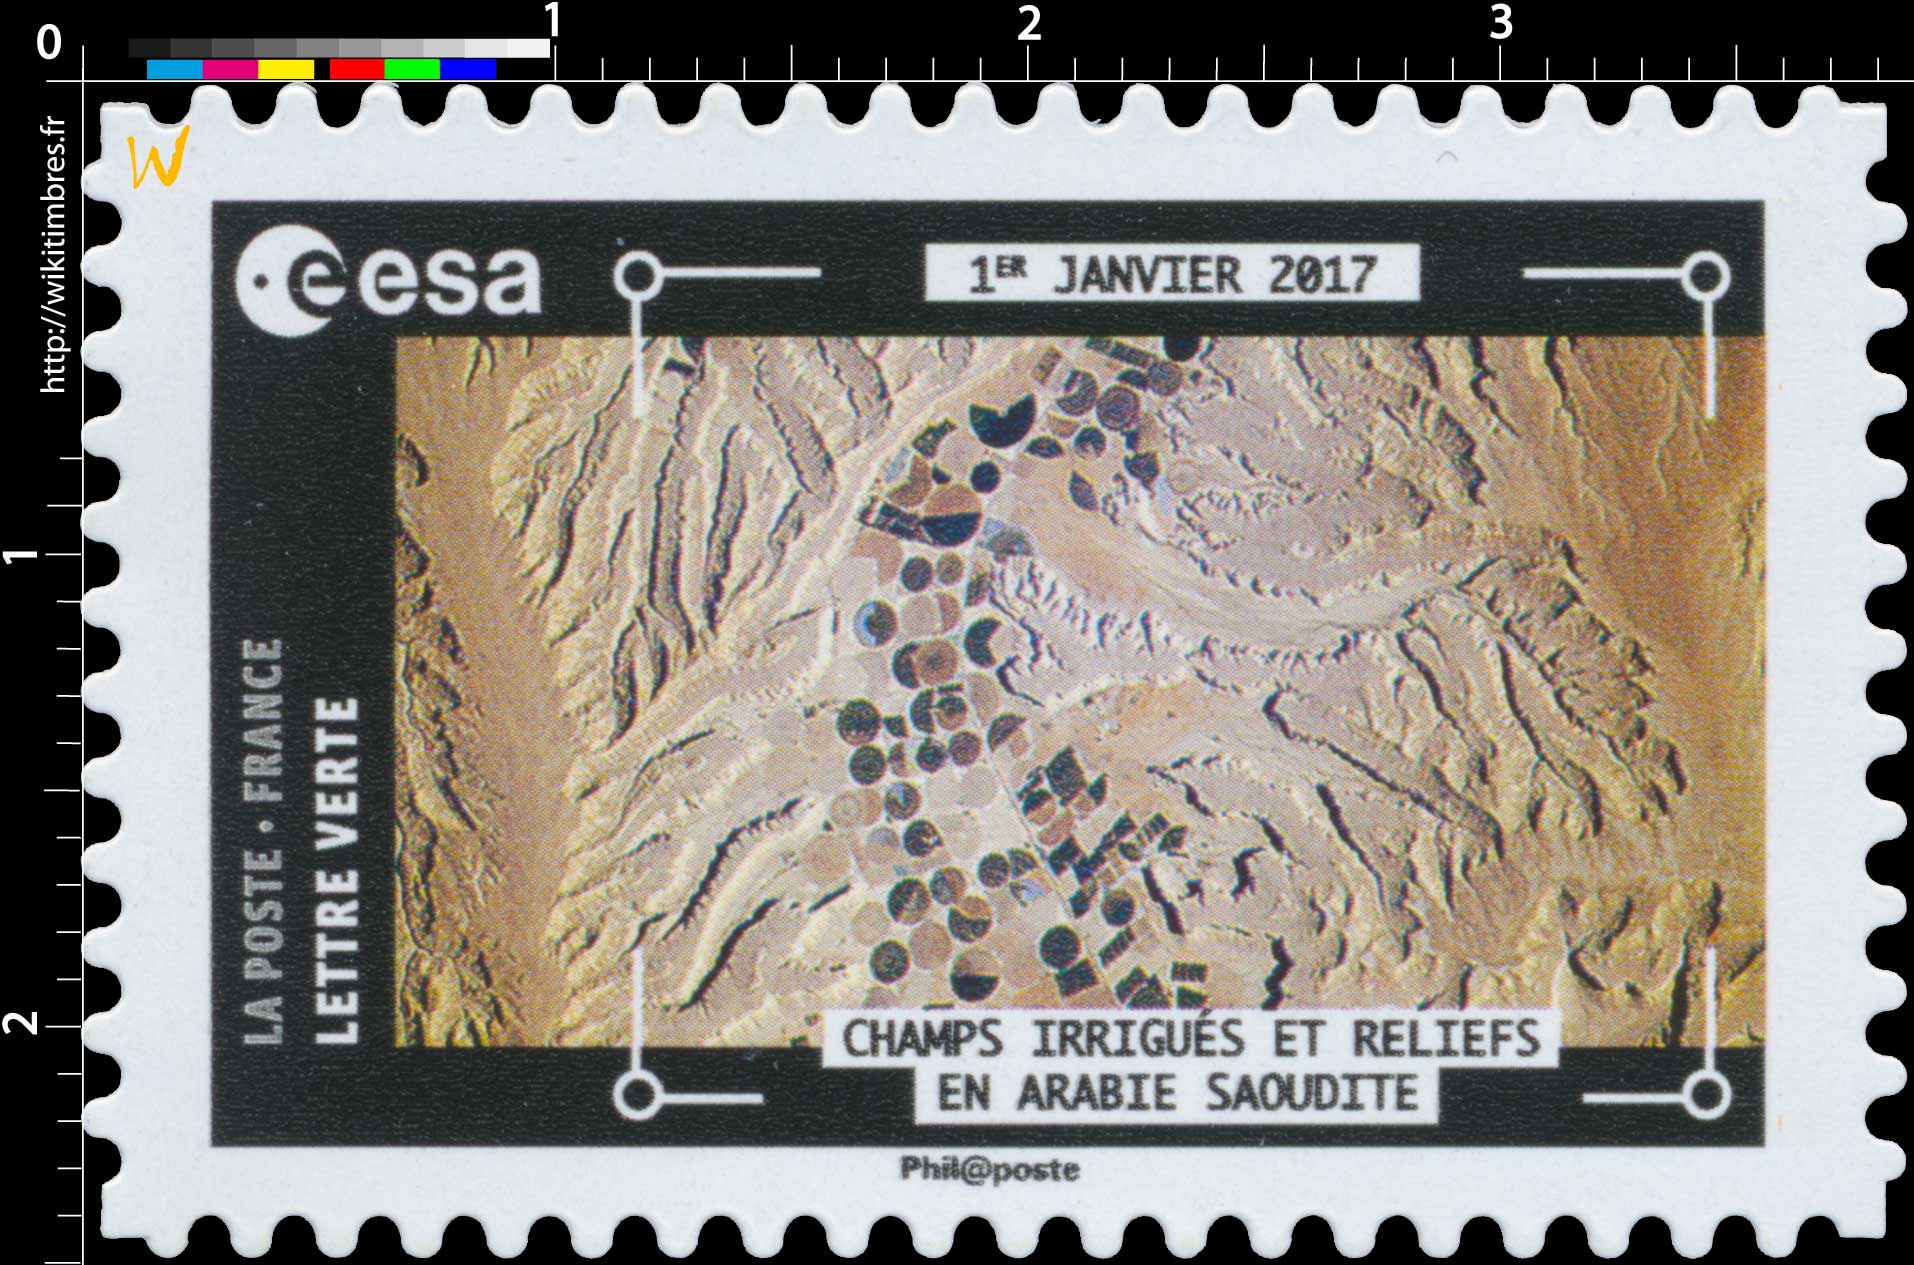 2018  ESA - 1er Janvier 2017 - Champs irrigués et reliefs en Arabie Saoudite